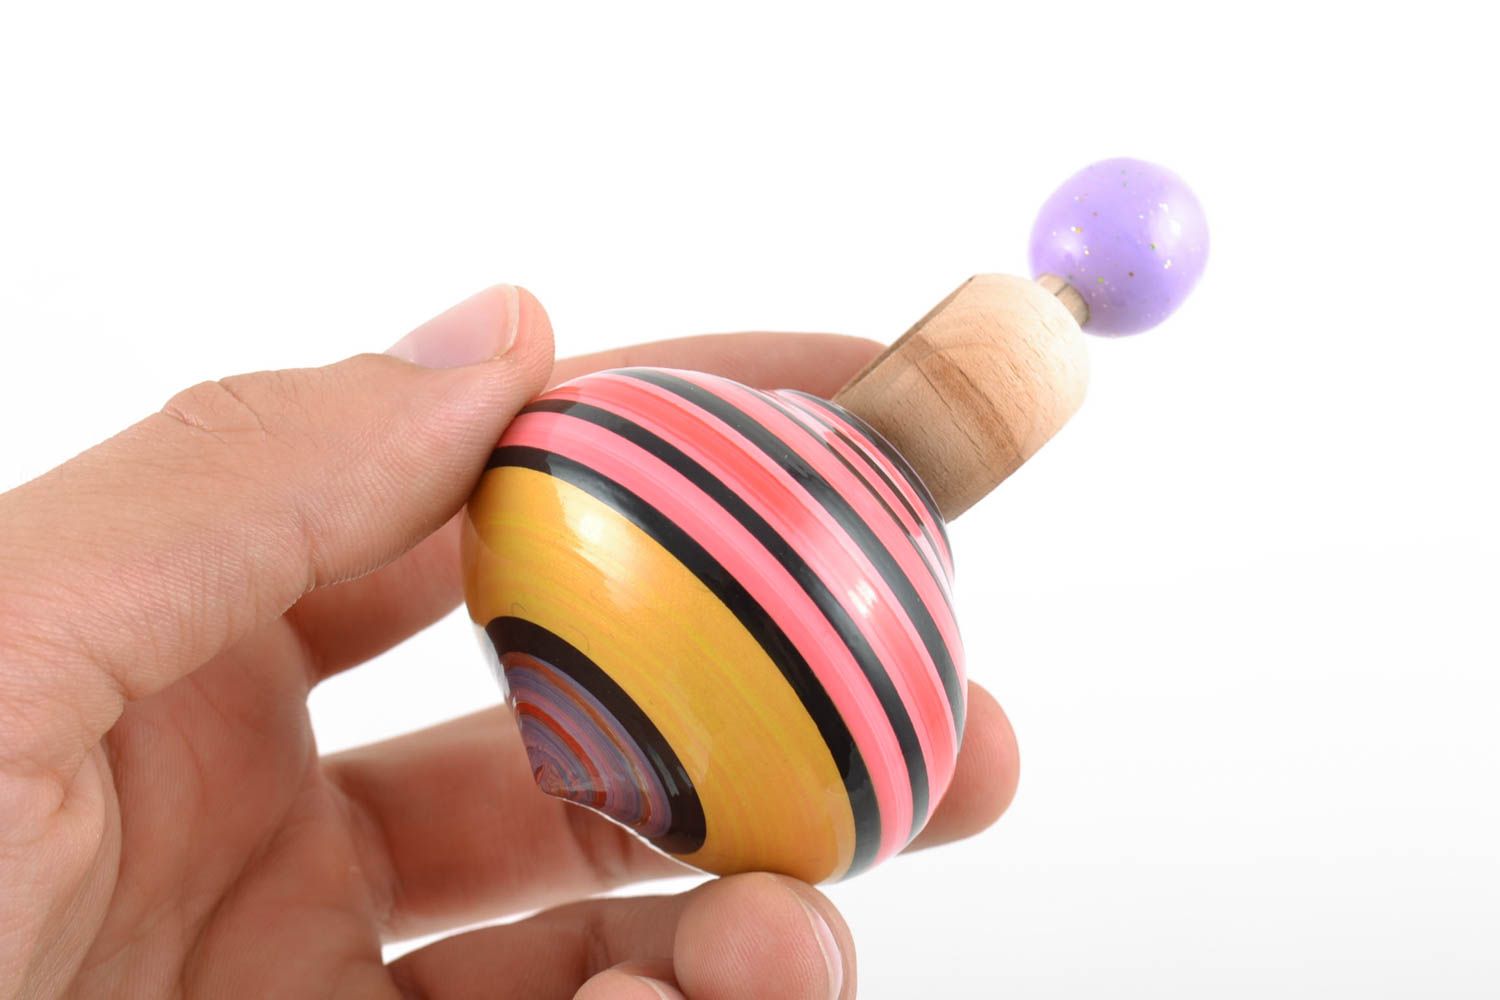 Развивающая игрушка юла из древесины яркая полосатая маленькая ручной работы  фото 2